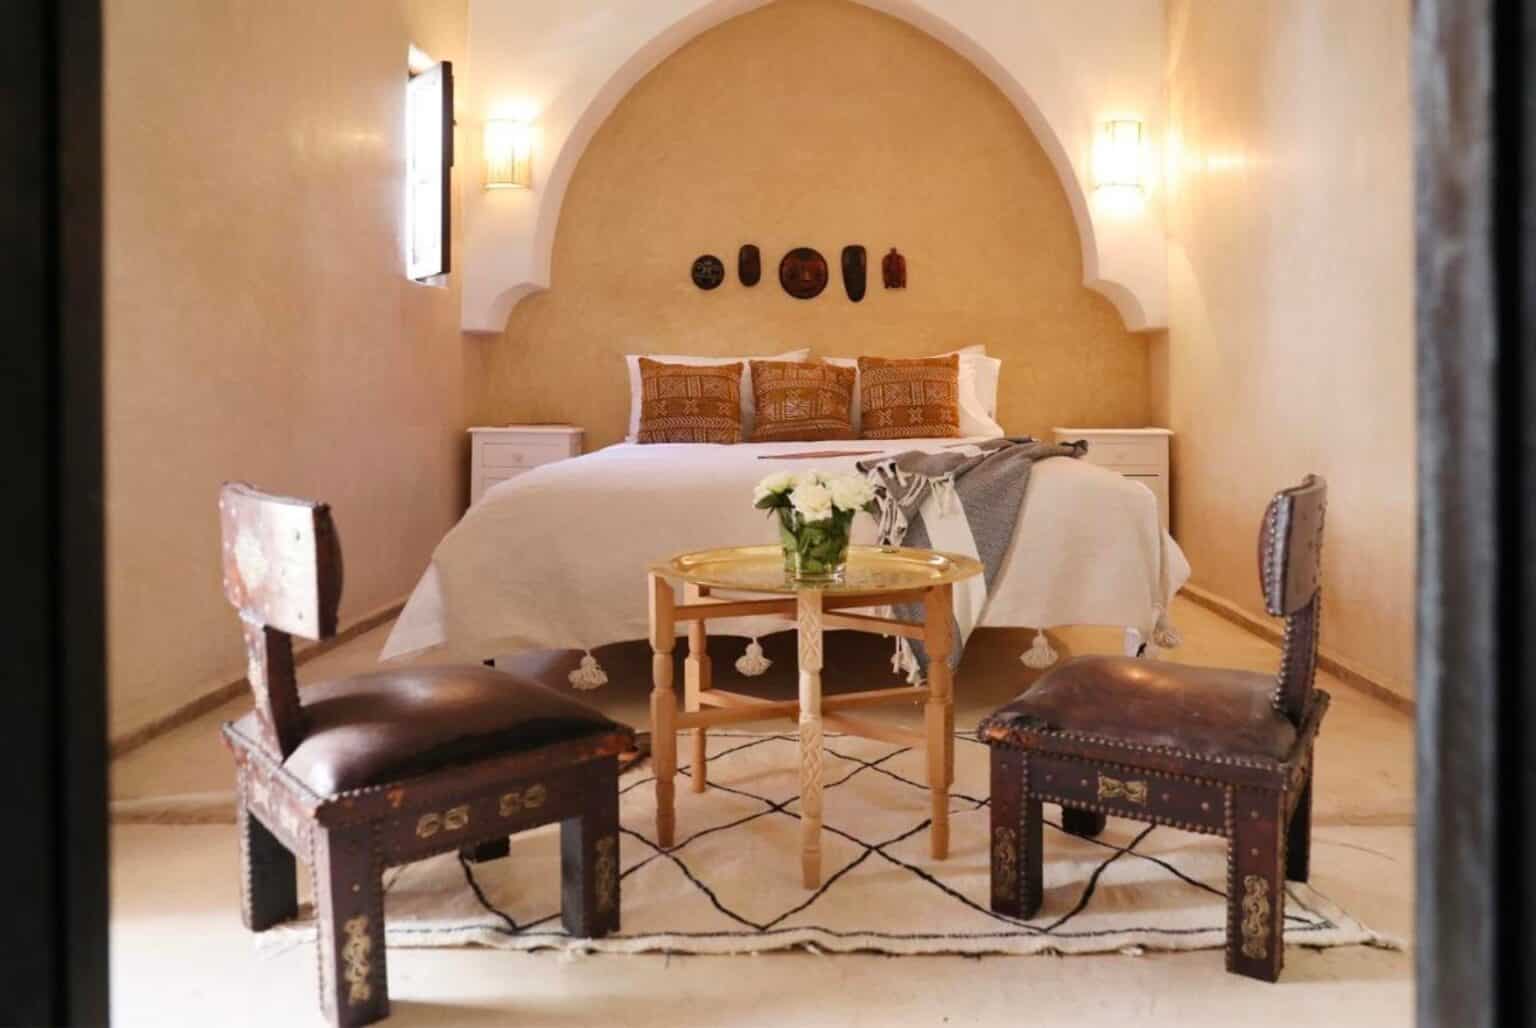 riads à marrakech ma sélection des plus beaux logements